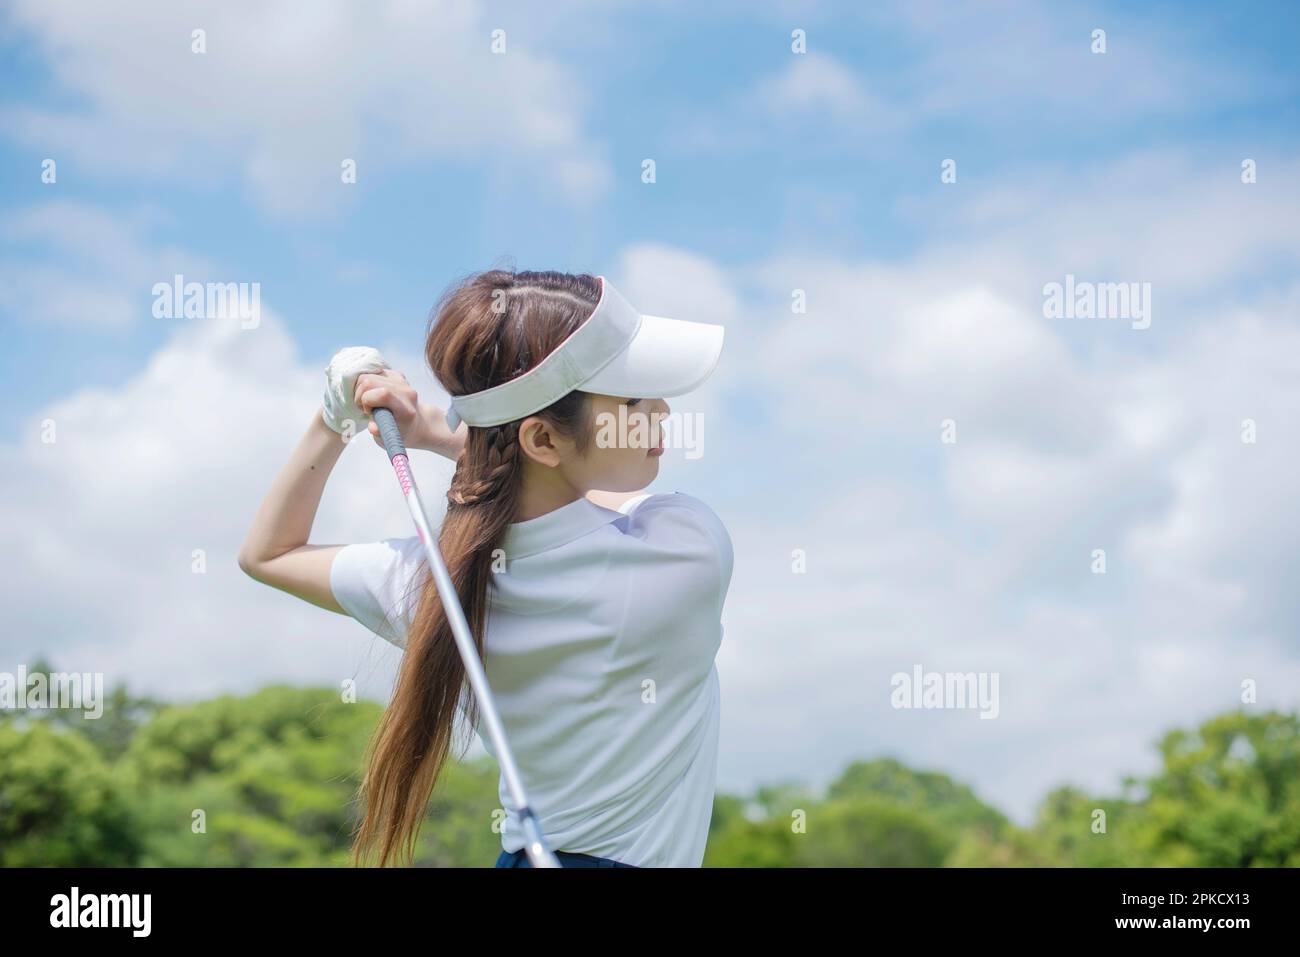 Frauen in ihren 20s, die Golf spielen Stockfoto